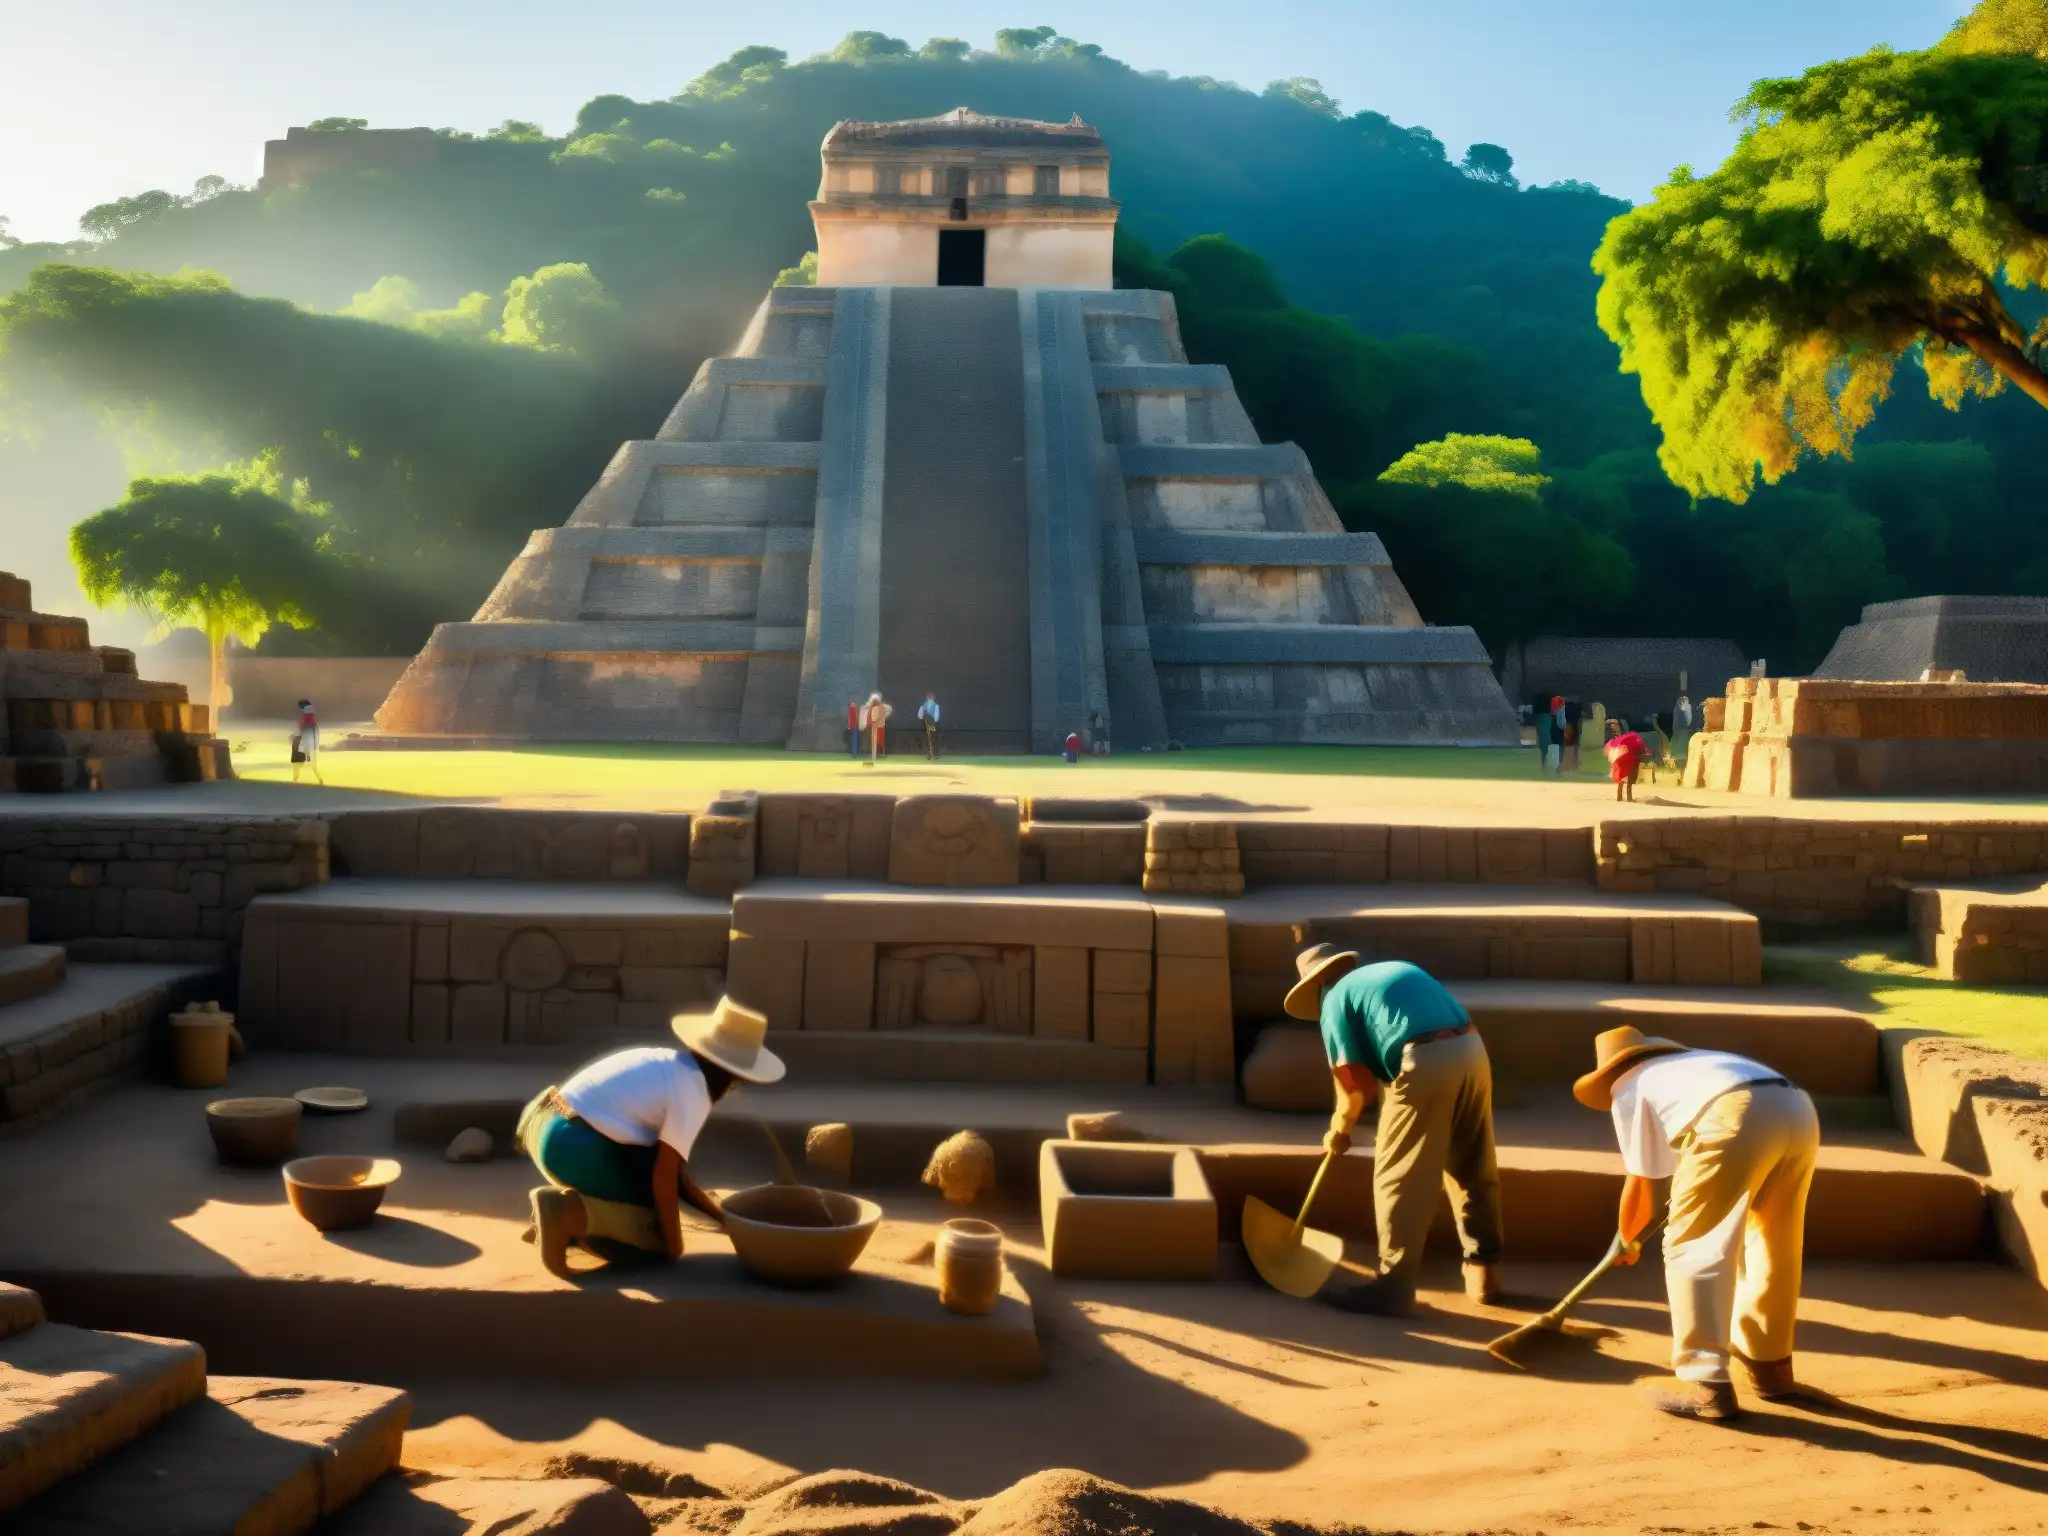 Un grupo de arqueólogos excava con cuidado en un sitio en México, con las ruinas de un templo azteca al fondo